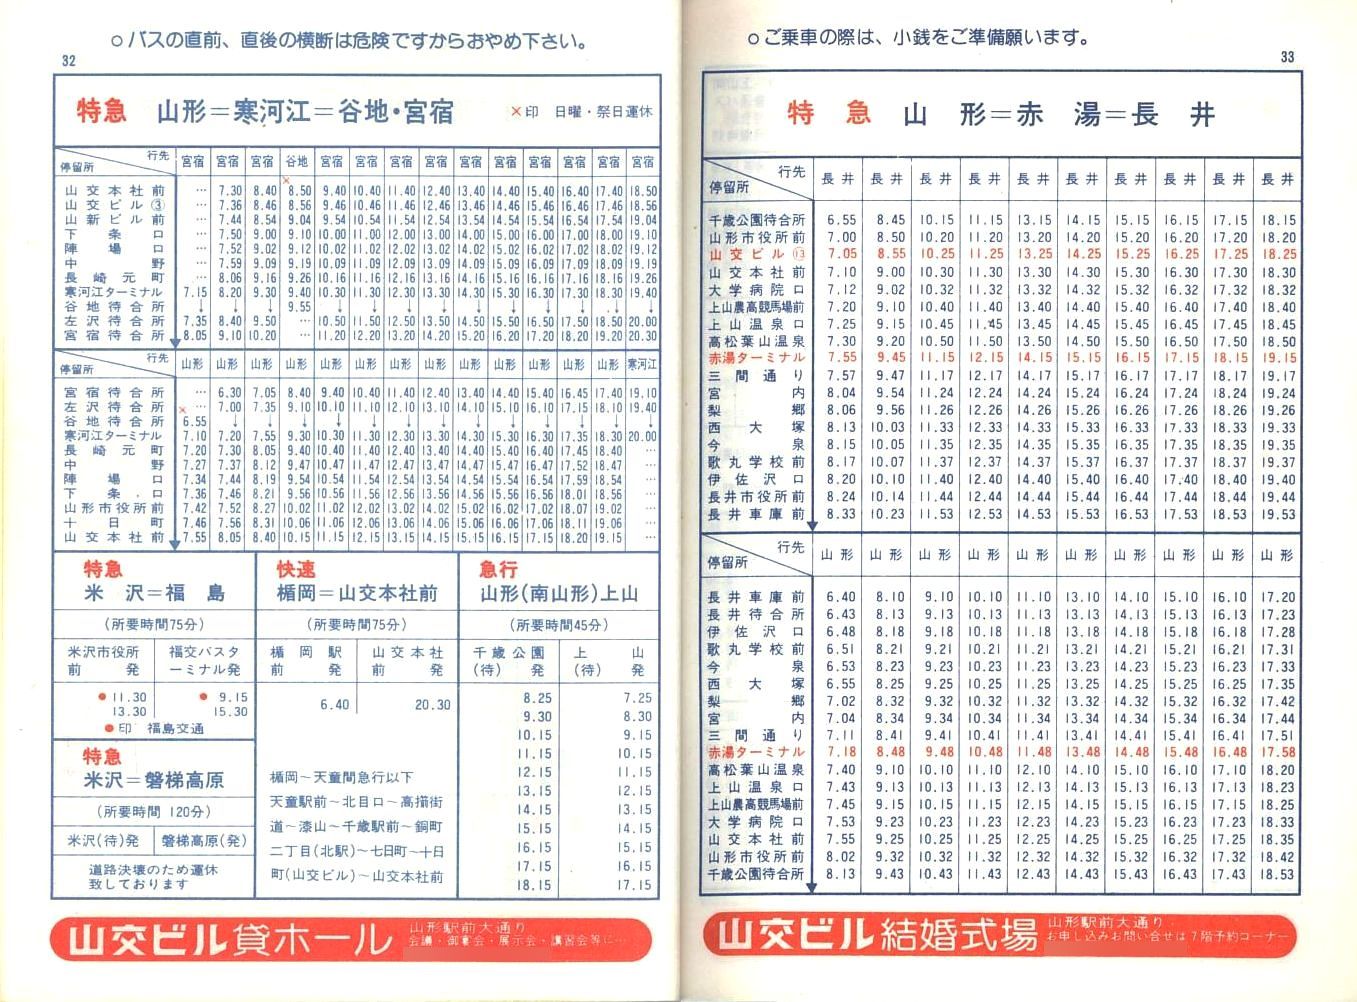 1978-04-01改正_山形交通_冊子時刻表_32-33